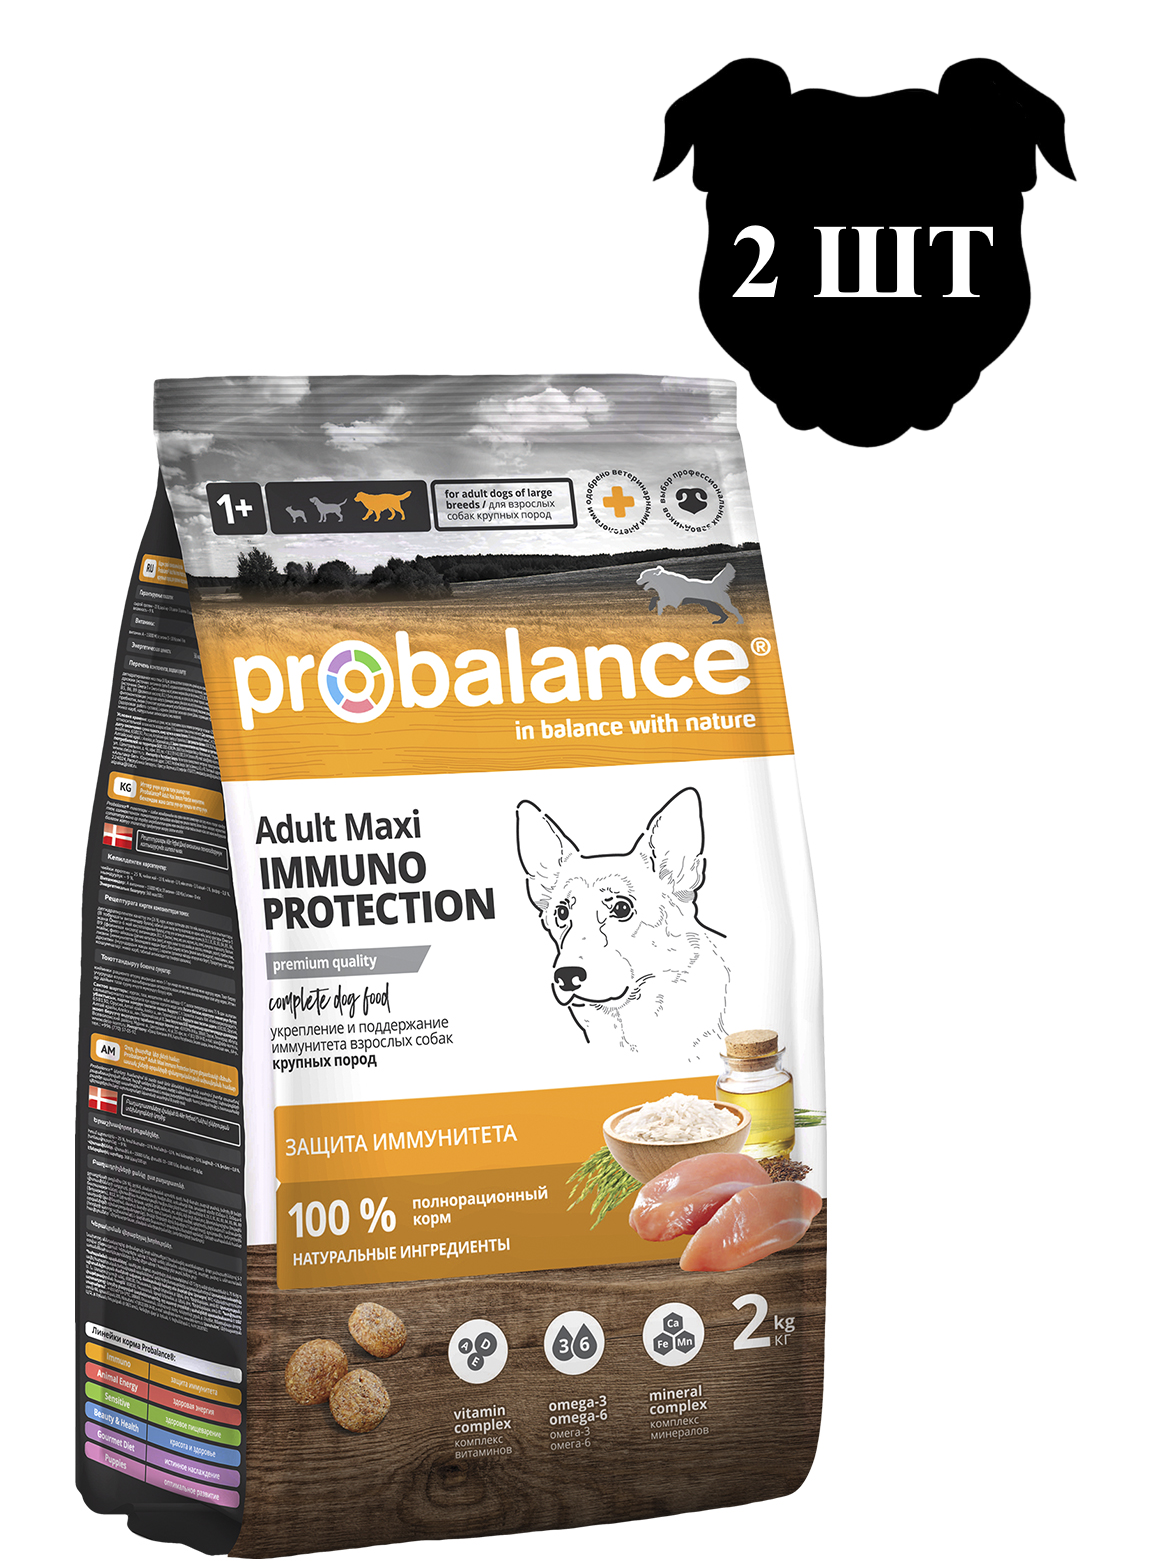 Сухой корм для собак ProBalance Immuno Adult Maxi для иммунитета, 2шт по 2кг